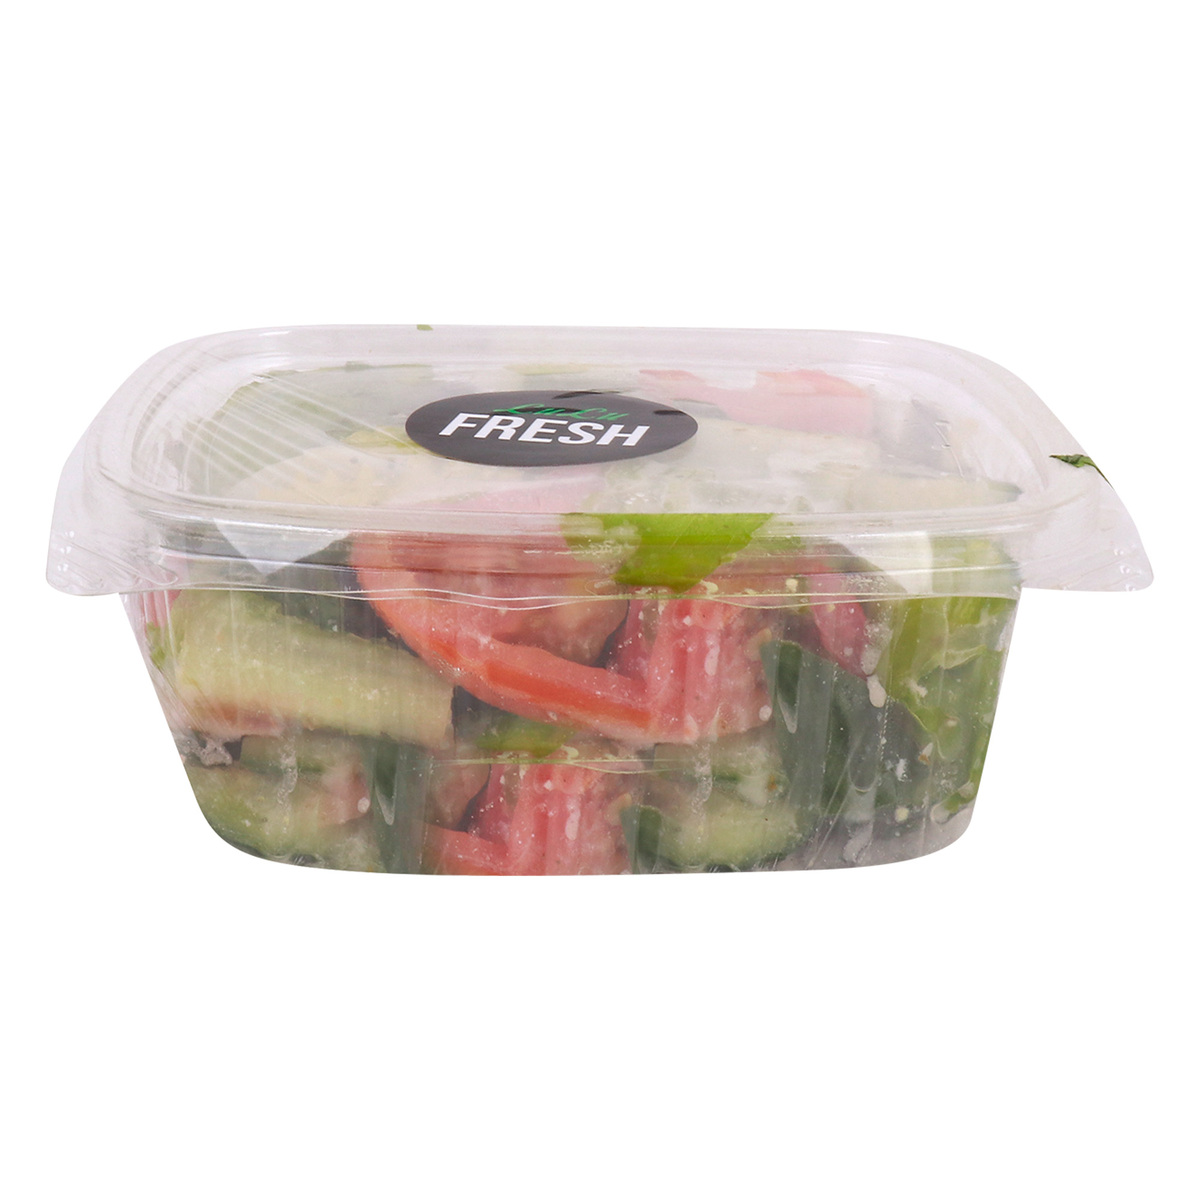 Fresh Greek Salad 250g